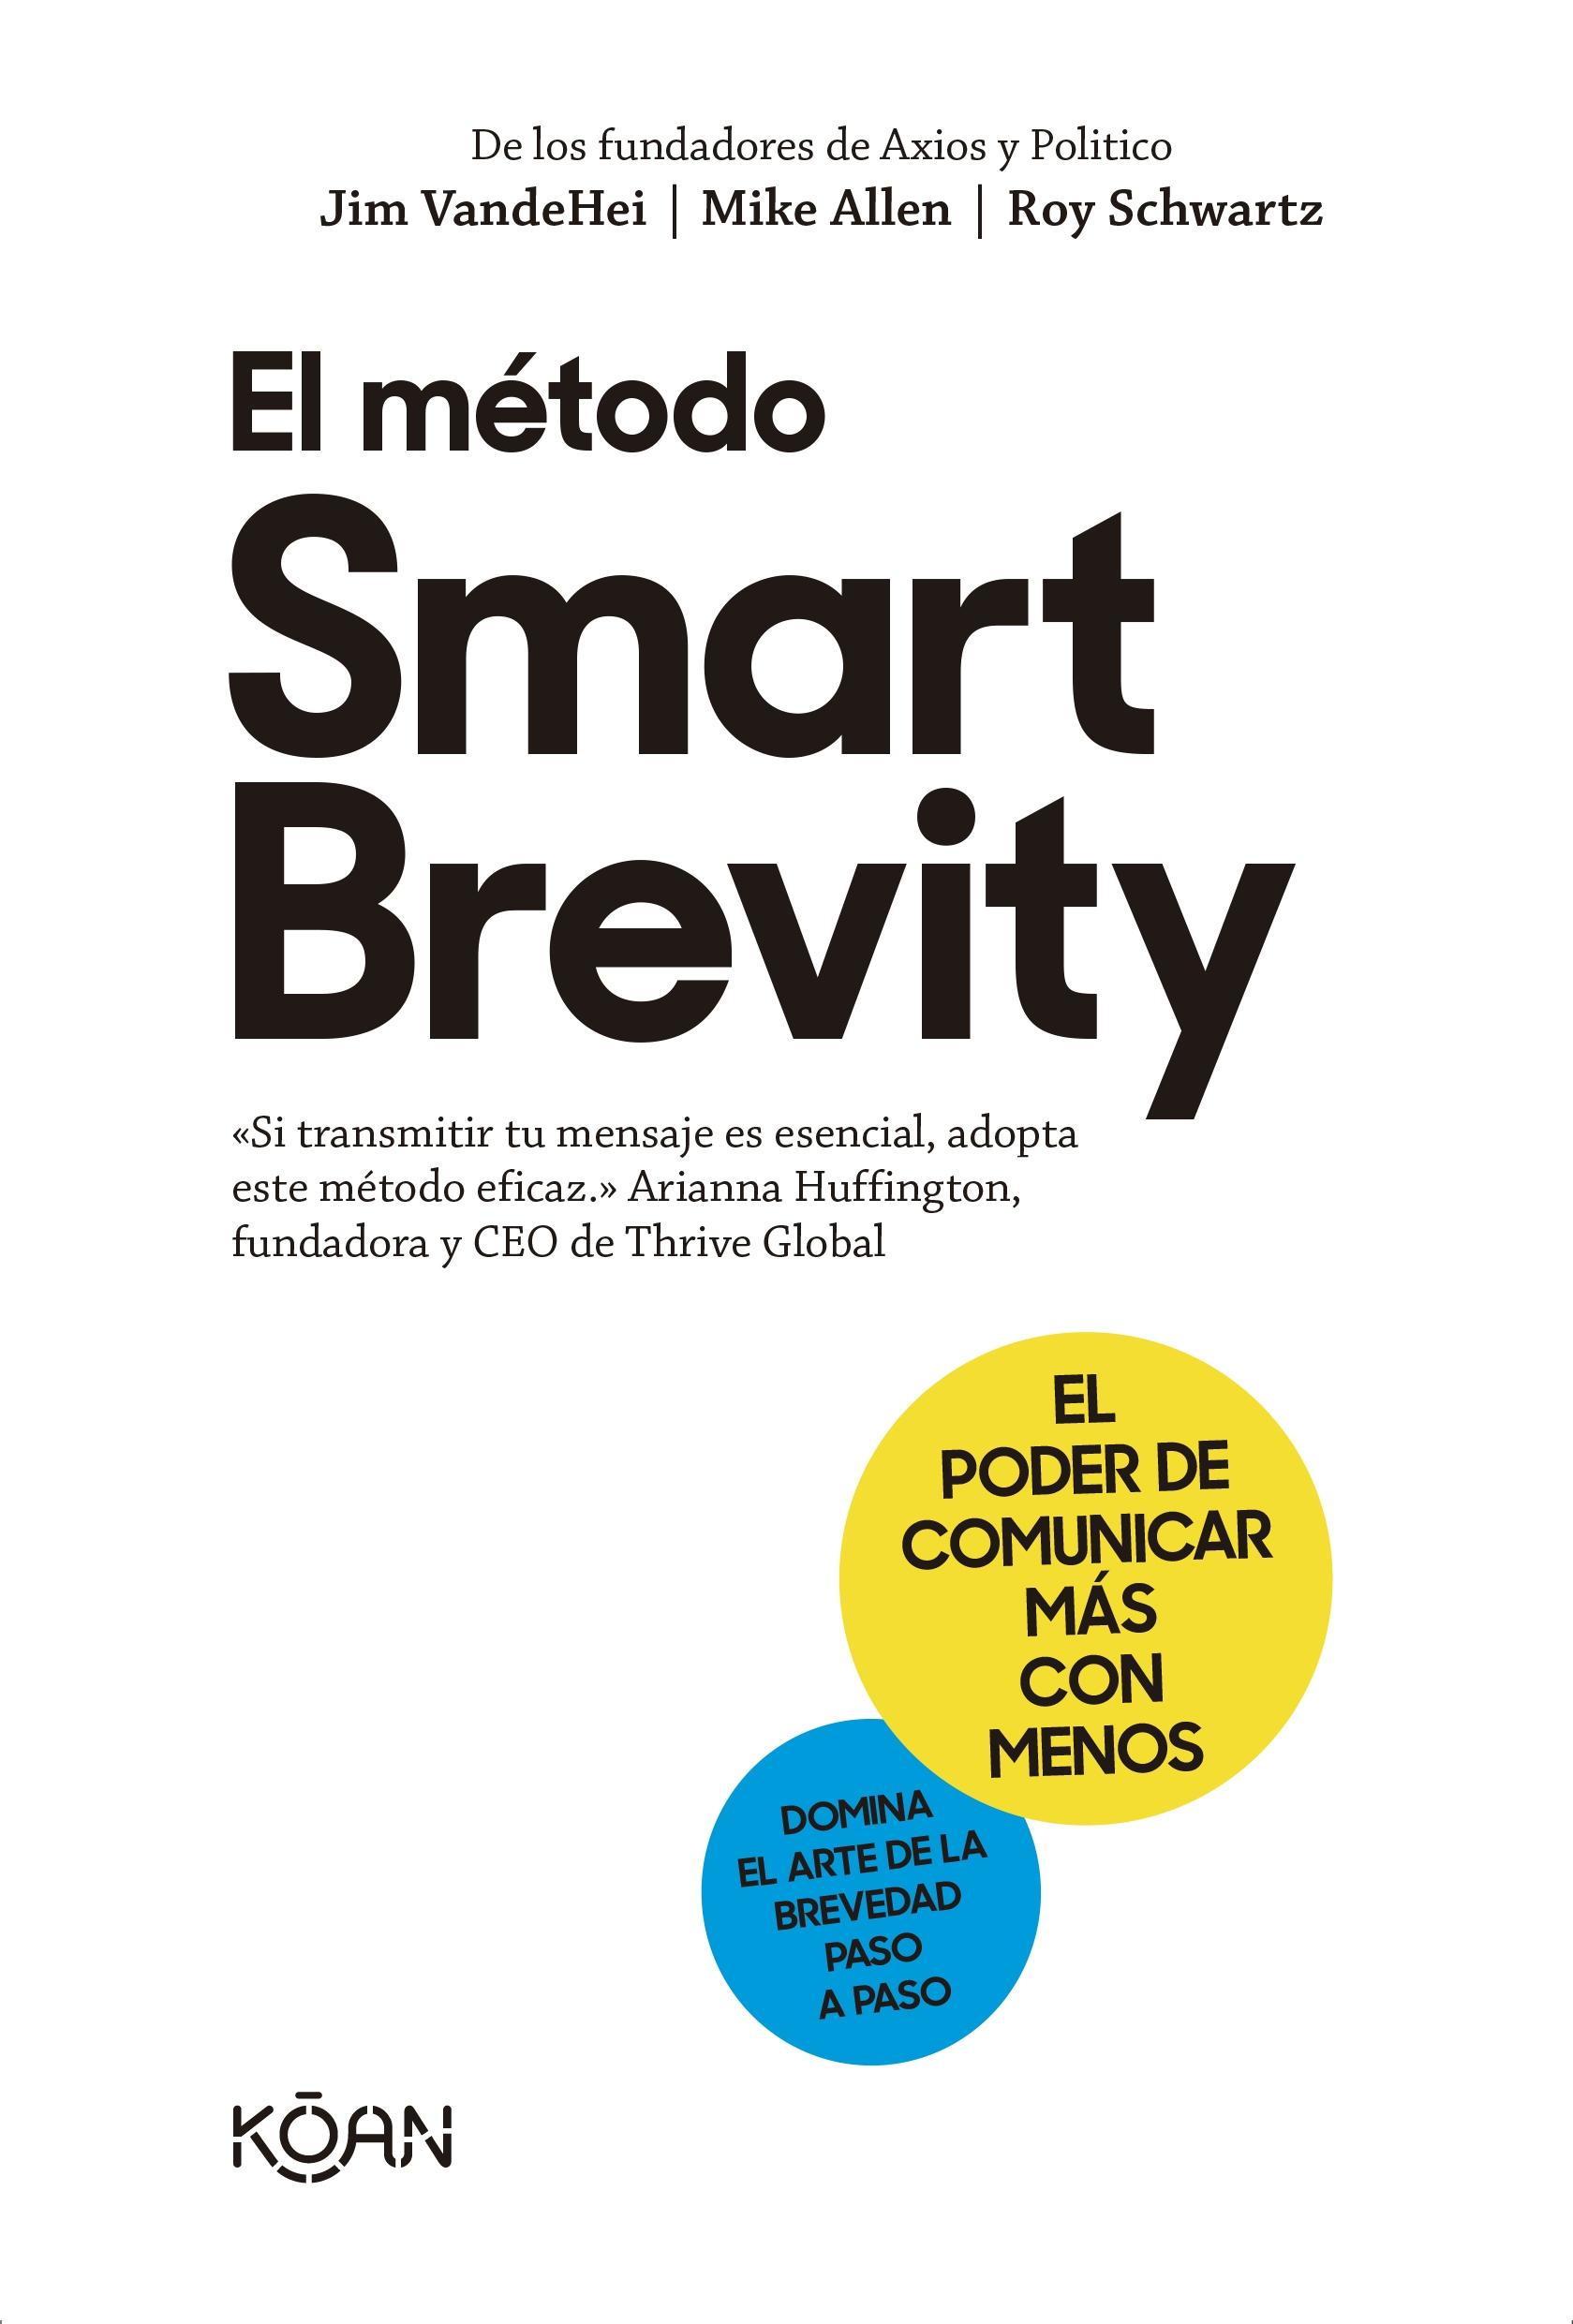 METODO SMART BREVITY, EL "EL PODER DE COMUNICAR MÁS CON MENOS". 